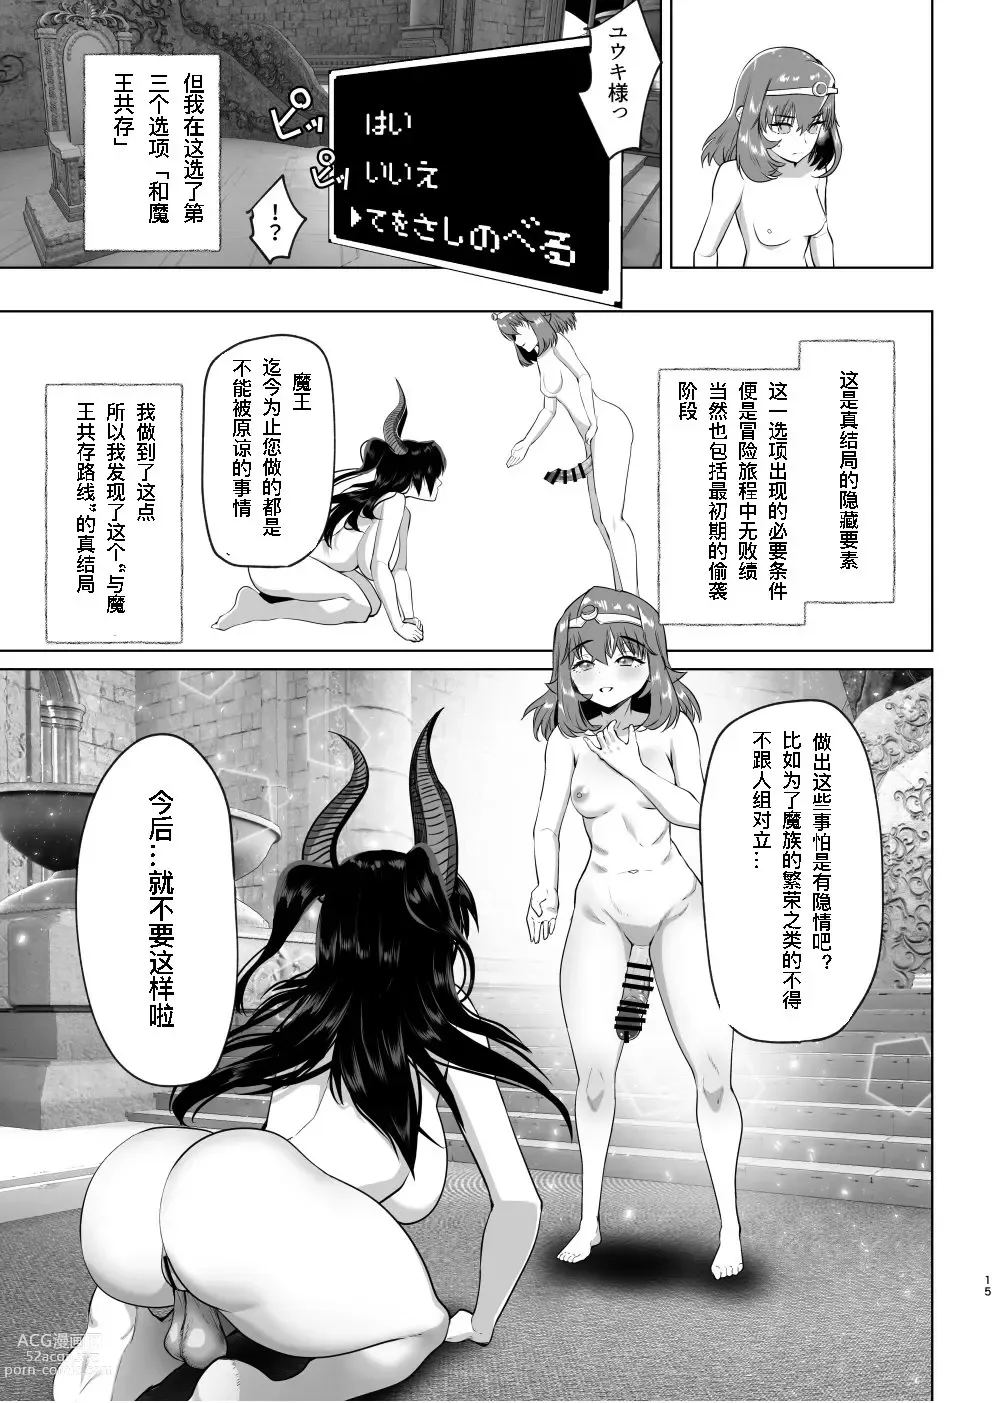 Page 14 of doujinshi 异世界转生后变成了扶她勇者 3